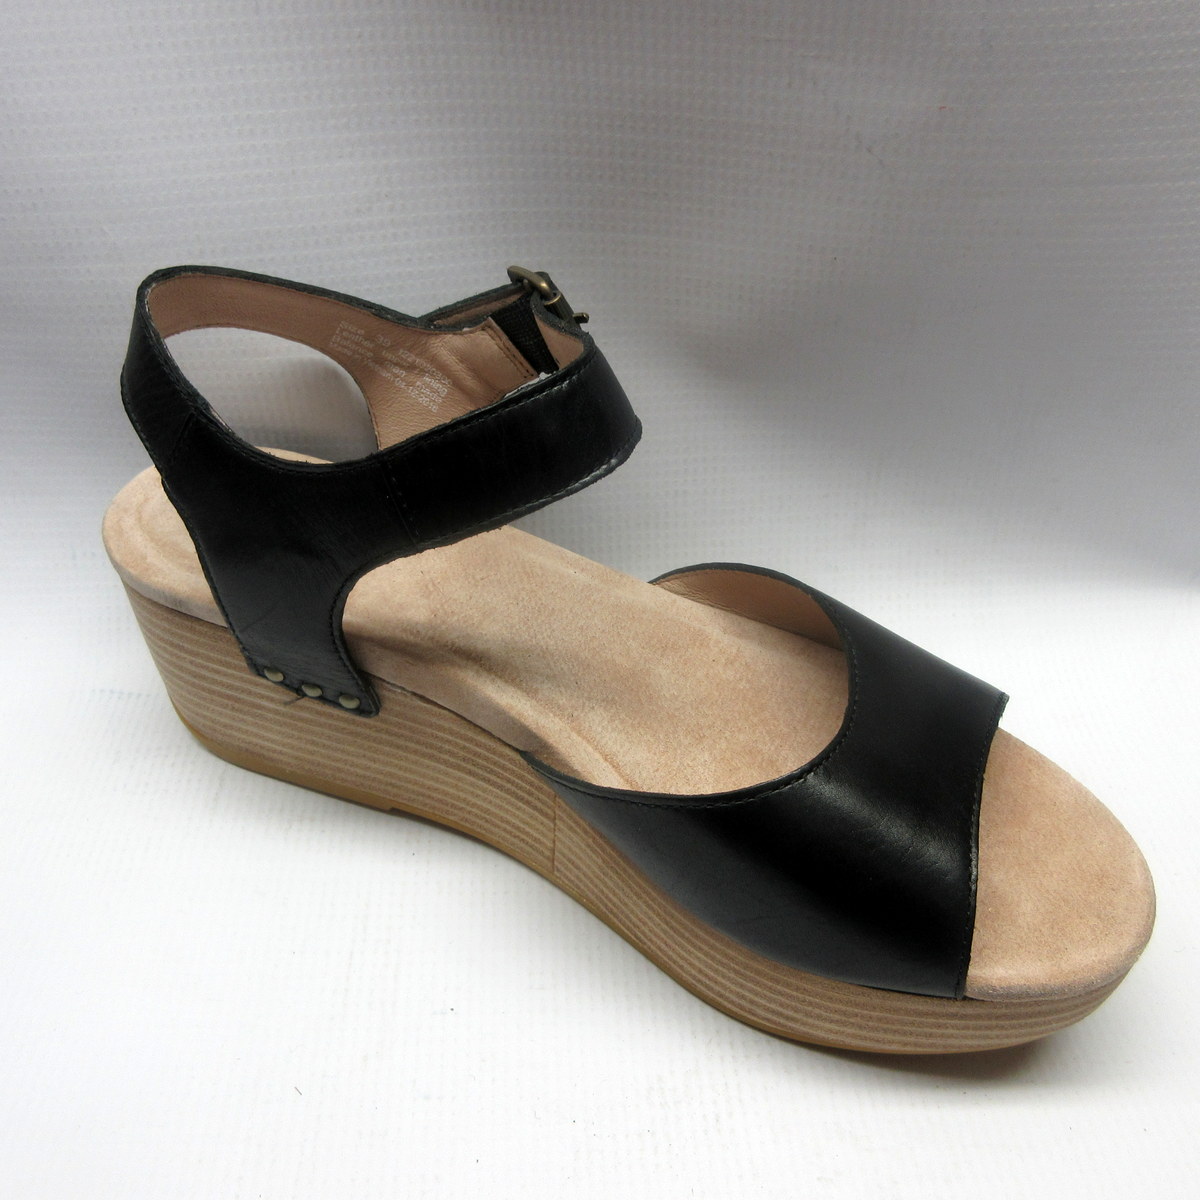 dansko sandals